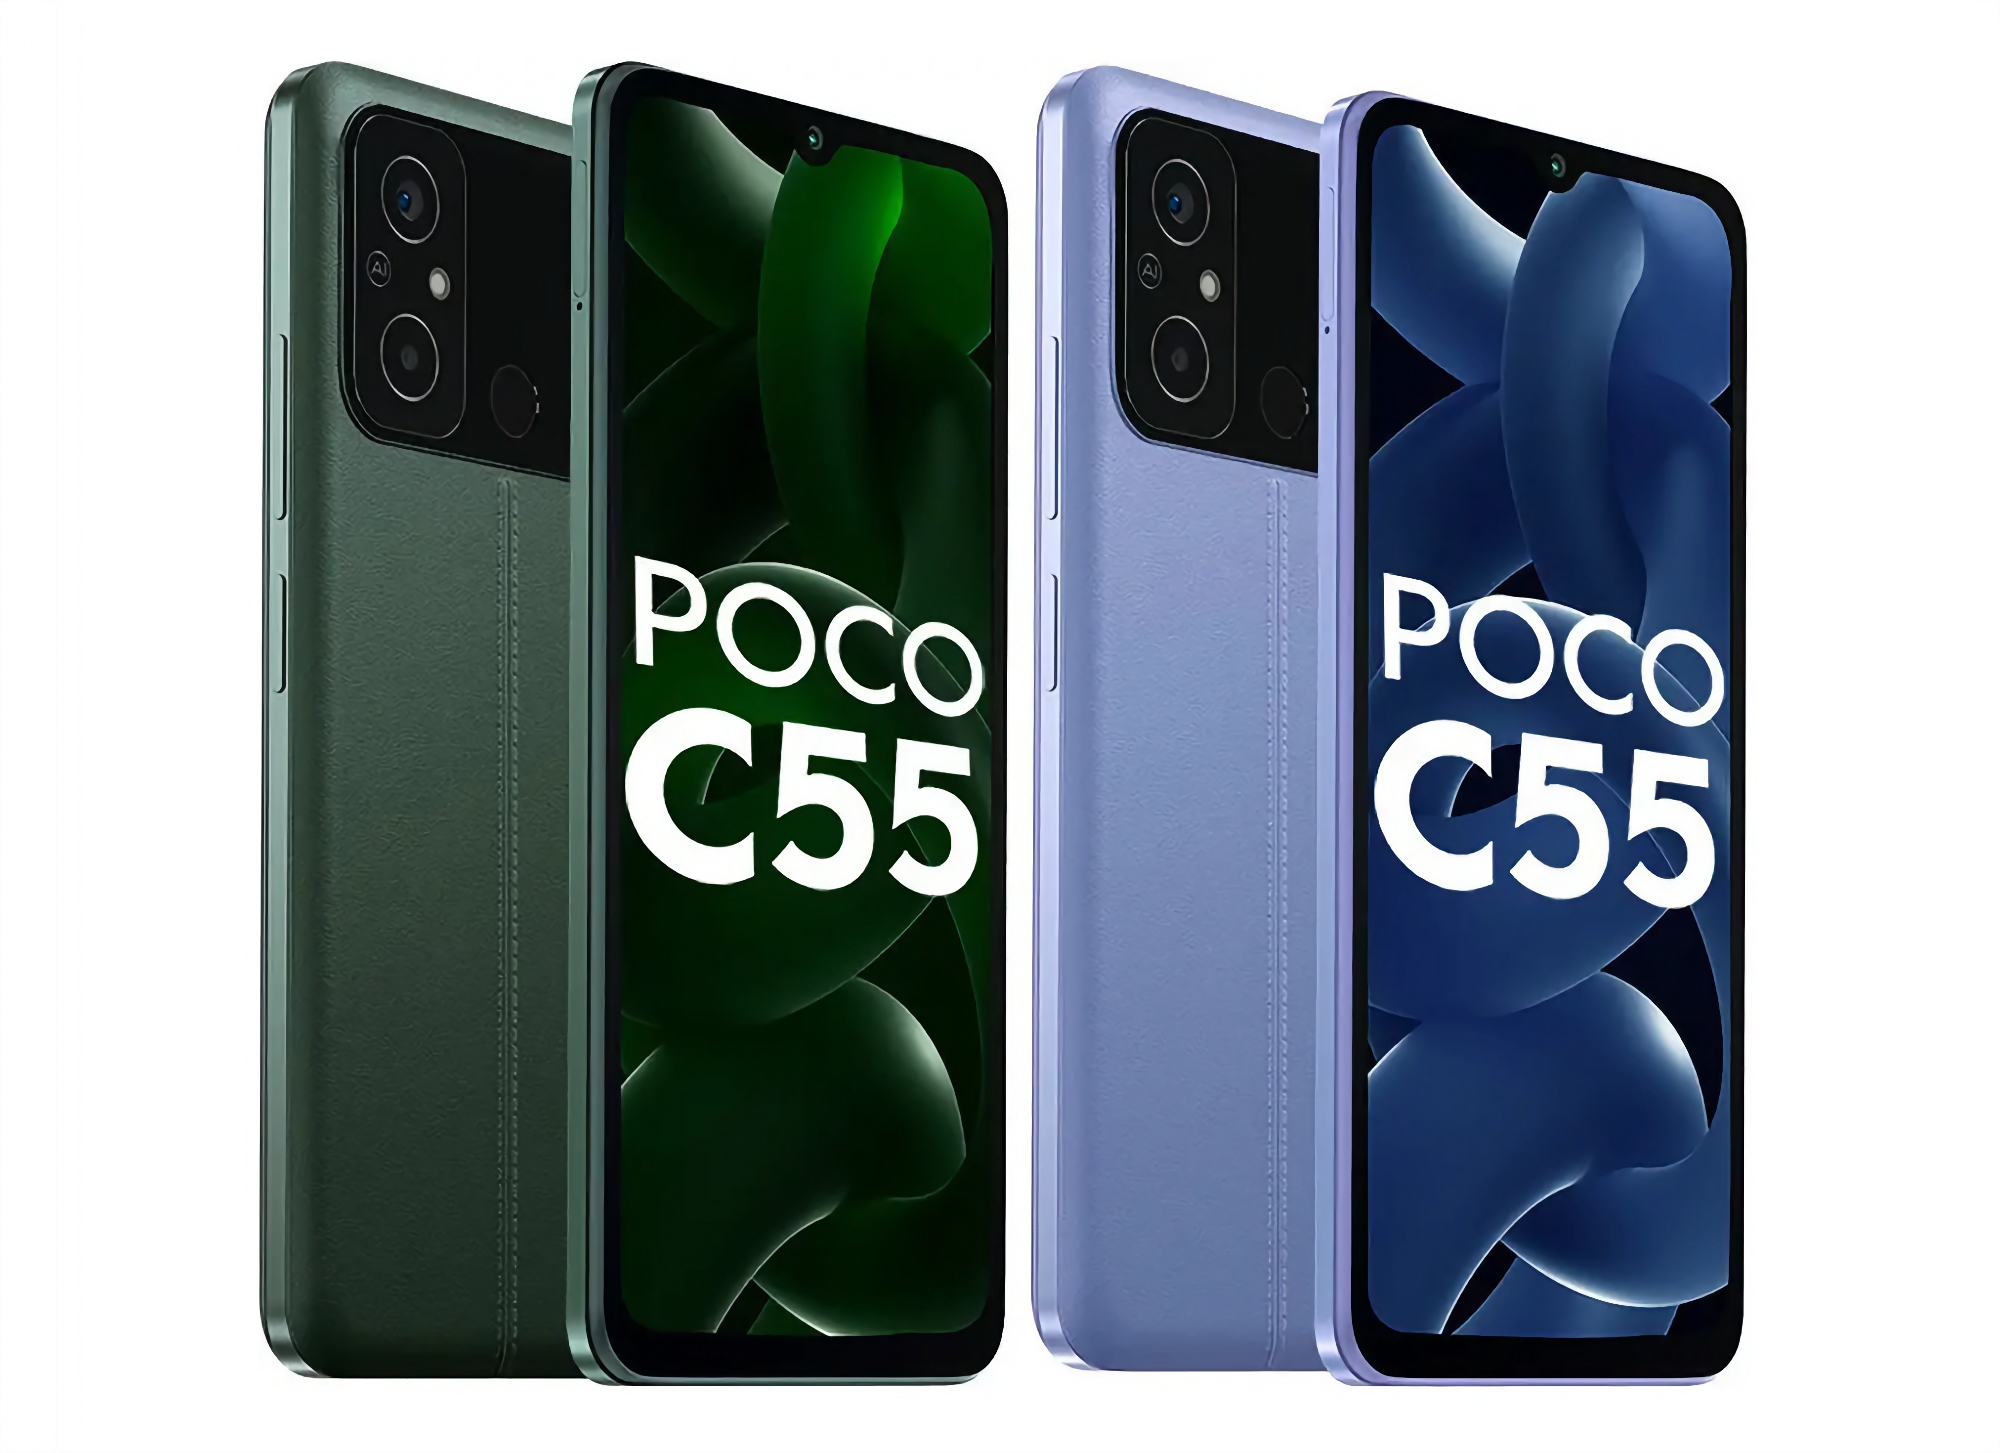 Confermato: POCO C55 con chip MediaTek Helio G85, protezione IP52 e batteria da 5000mAh arriverà sul mercato globale